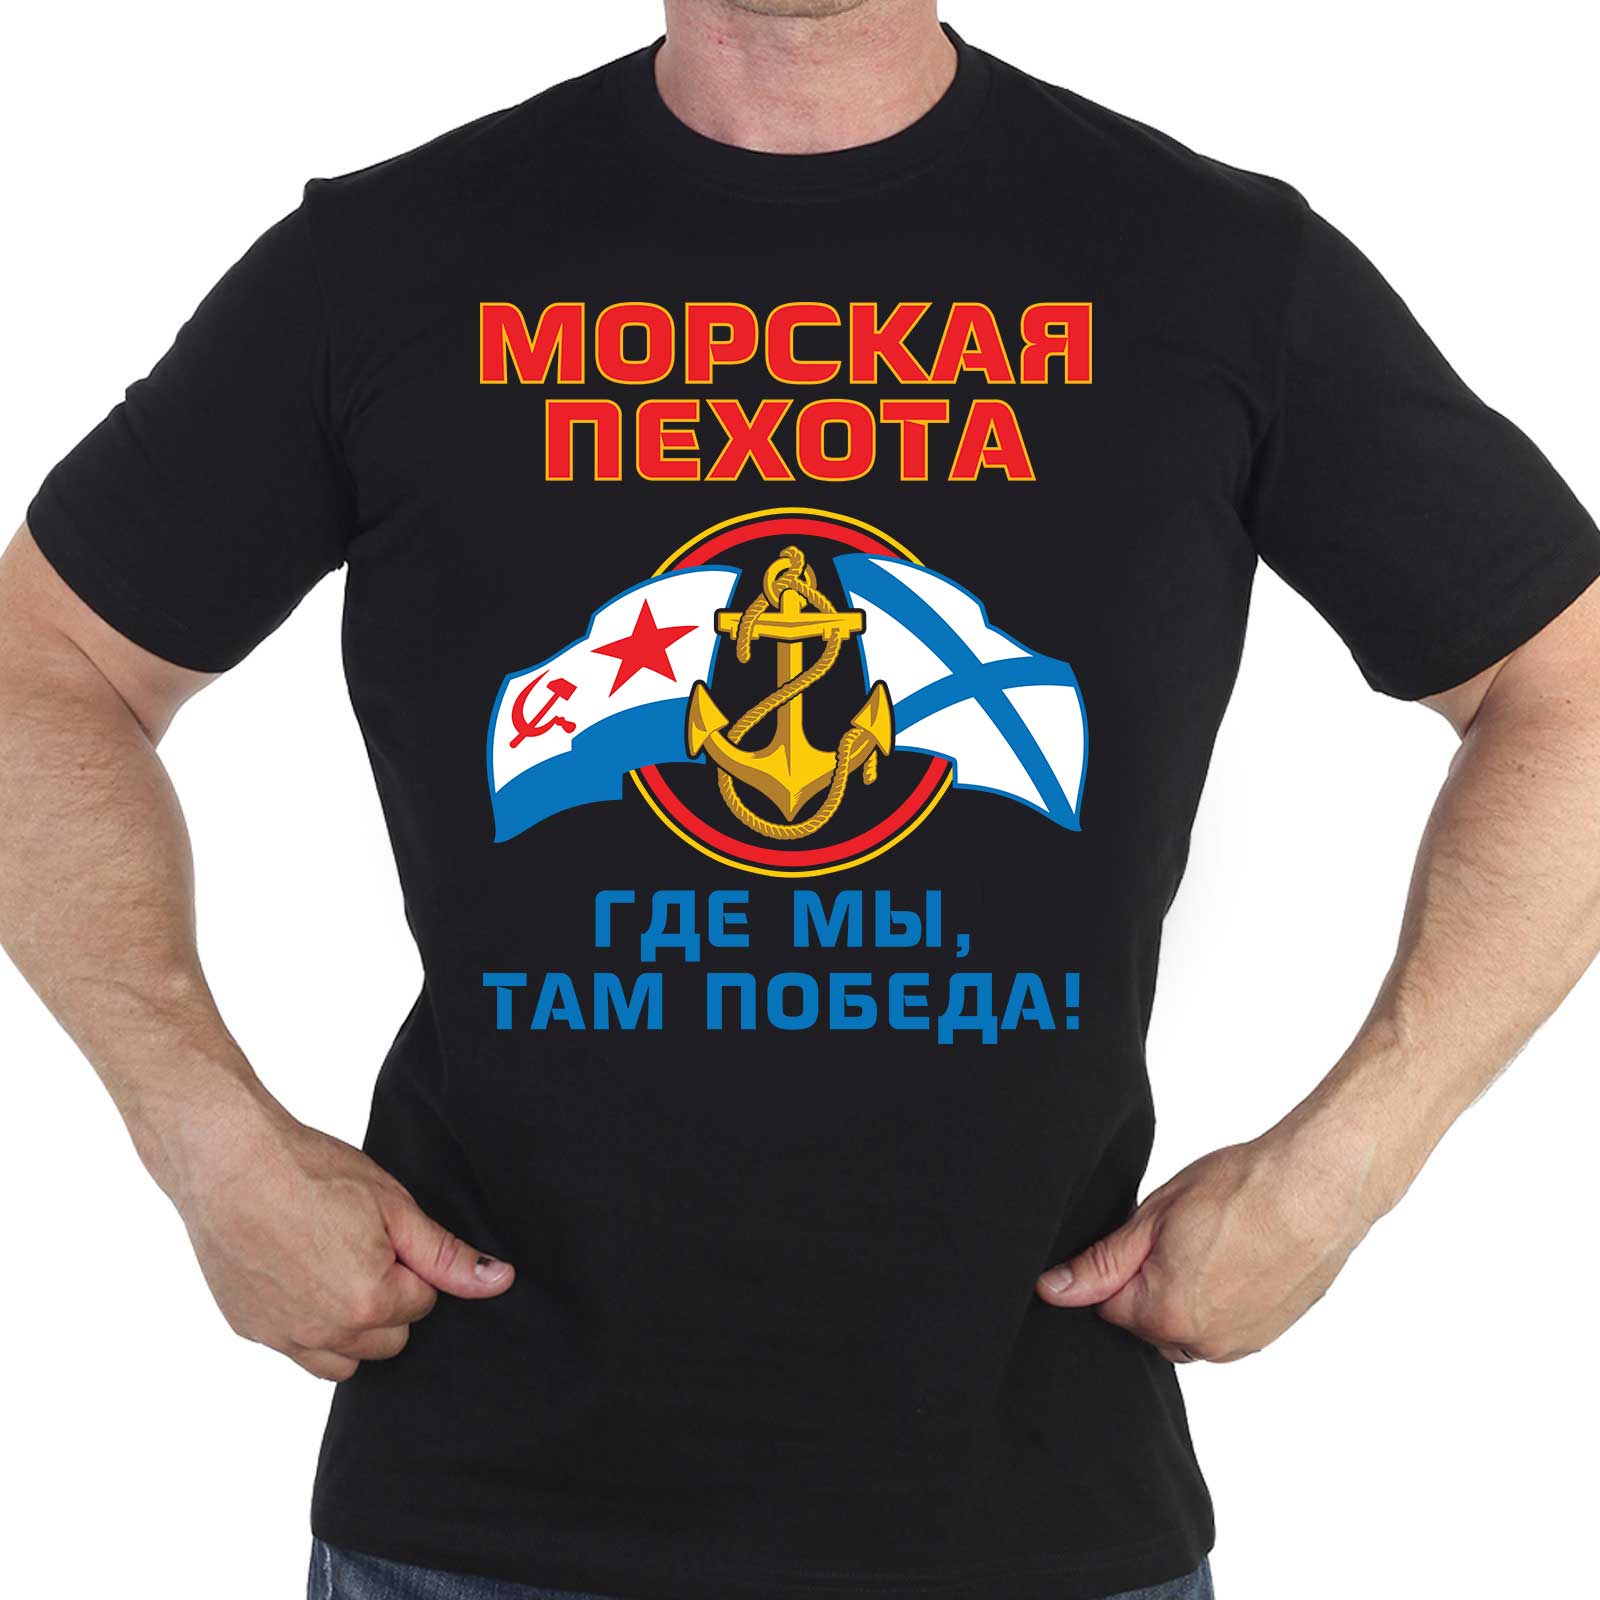 Купить футболку на День Морской пехоты